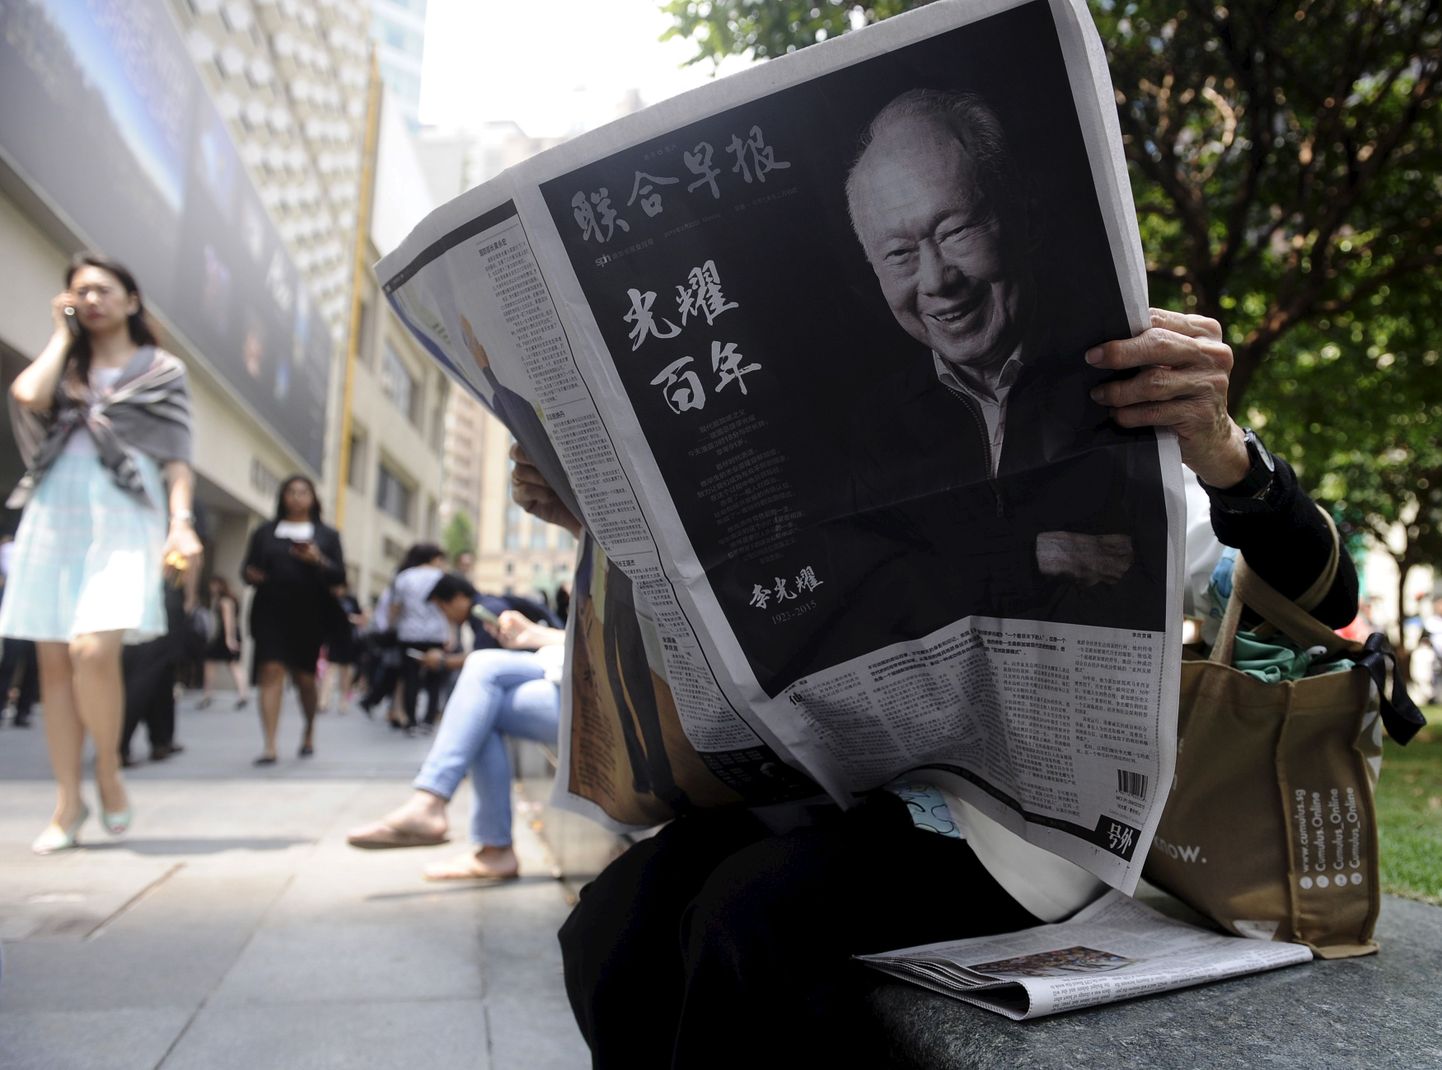 Женщина читает газету с сообщением о смерти Ли Куан Ю.